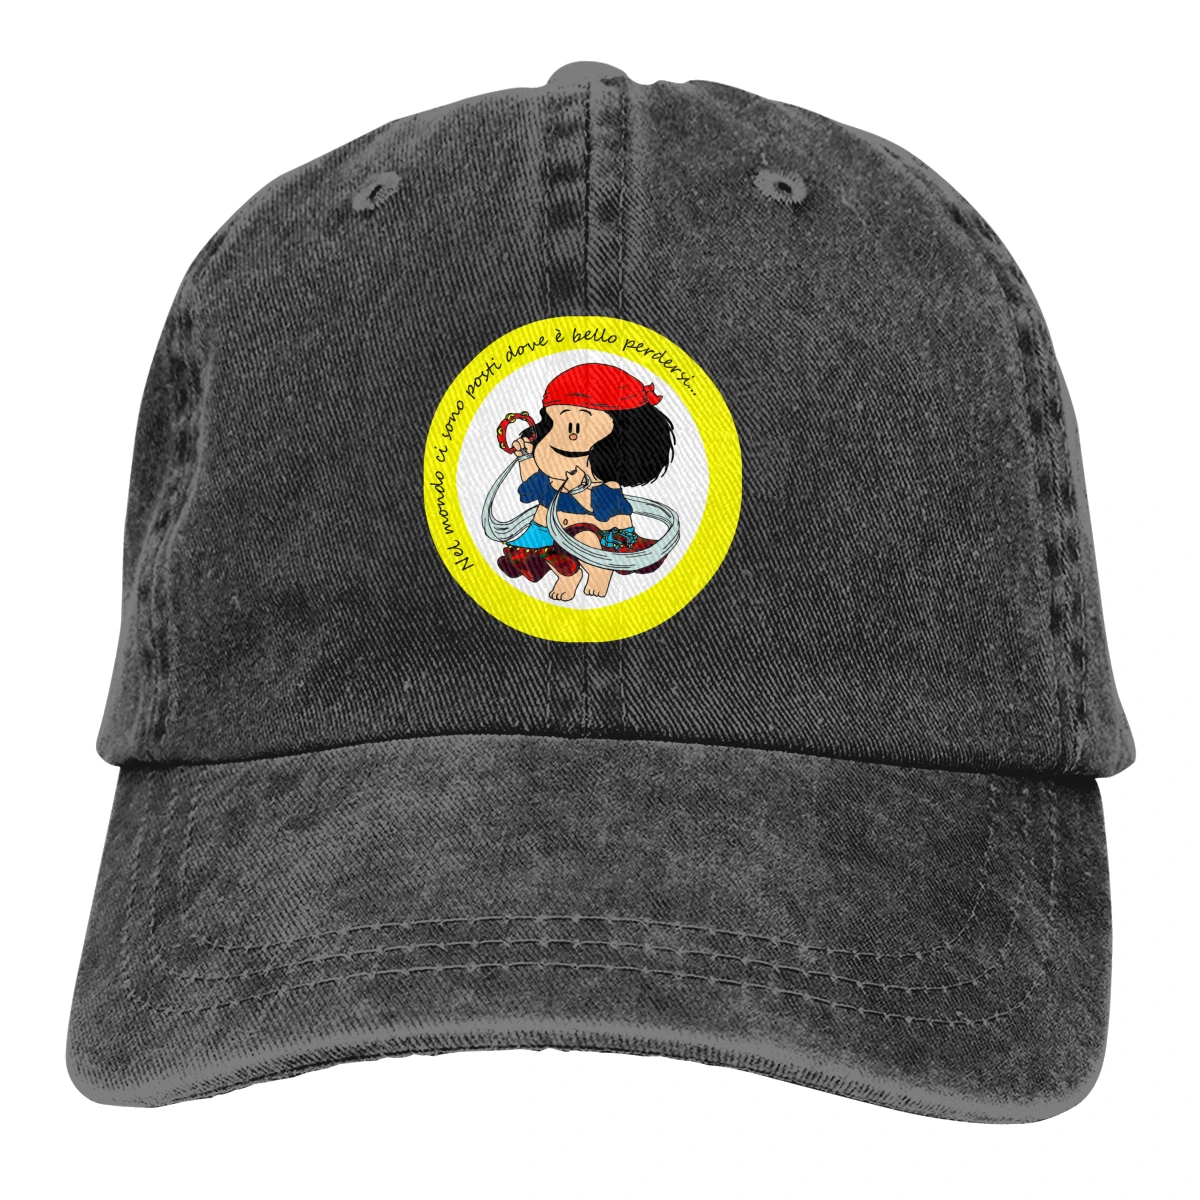 Mafalda Boné chapéu de cowboy Pico do boné Cowboy Bebop Chapéus de Homens e mulheres de chapéus